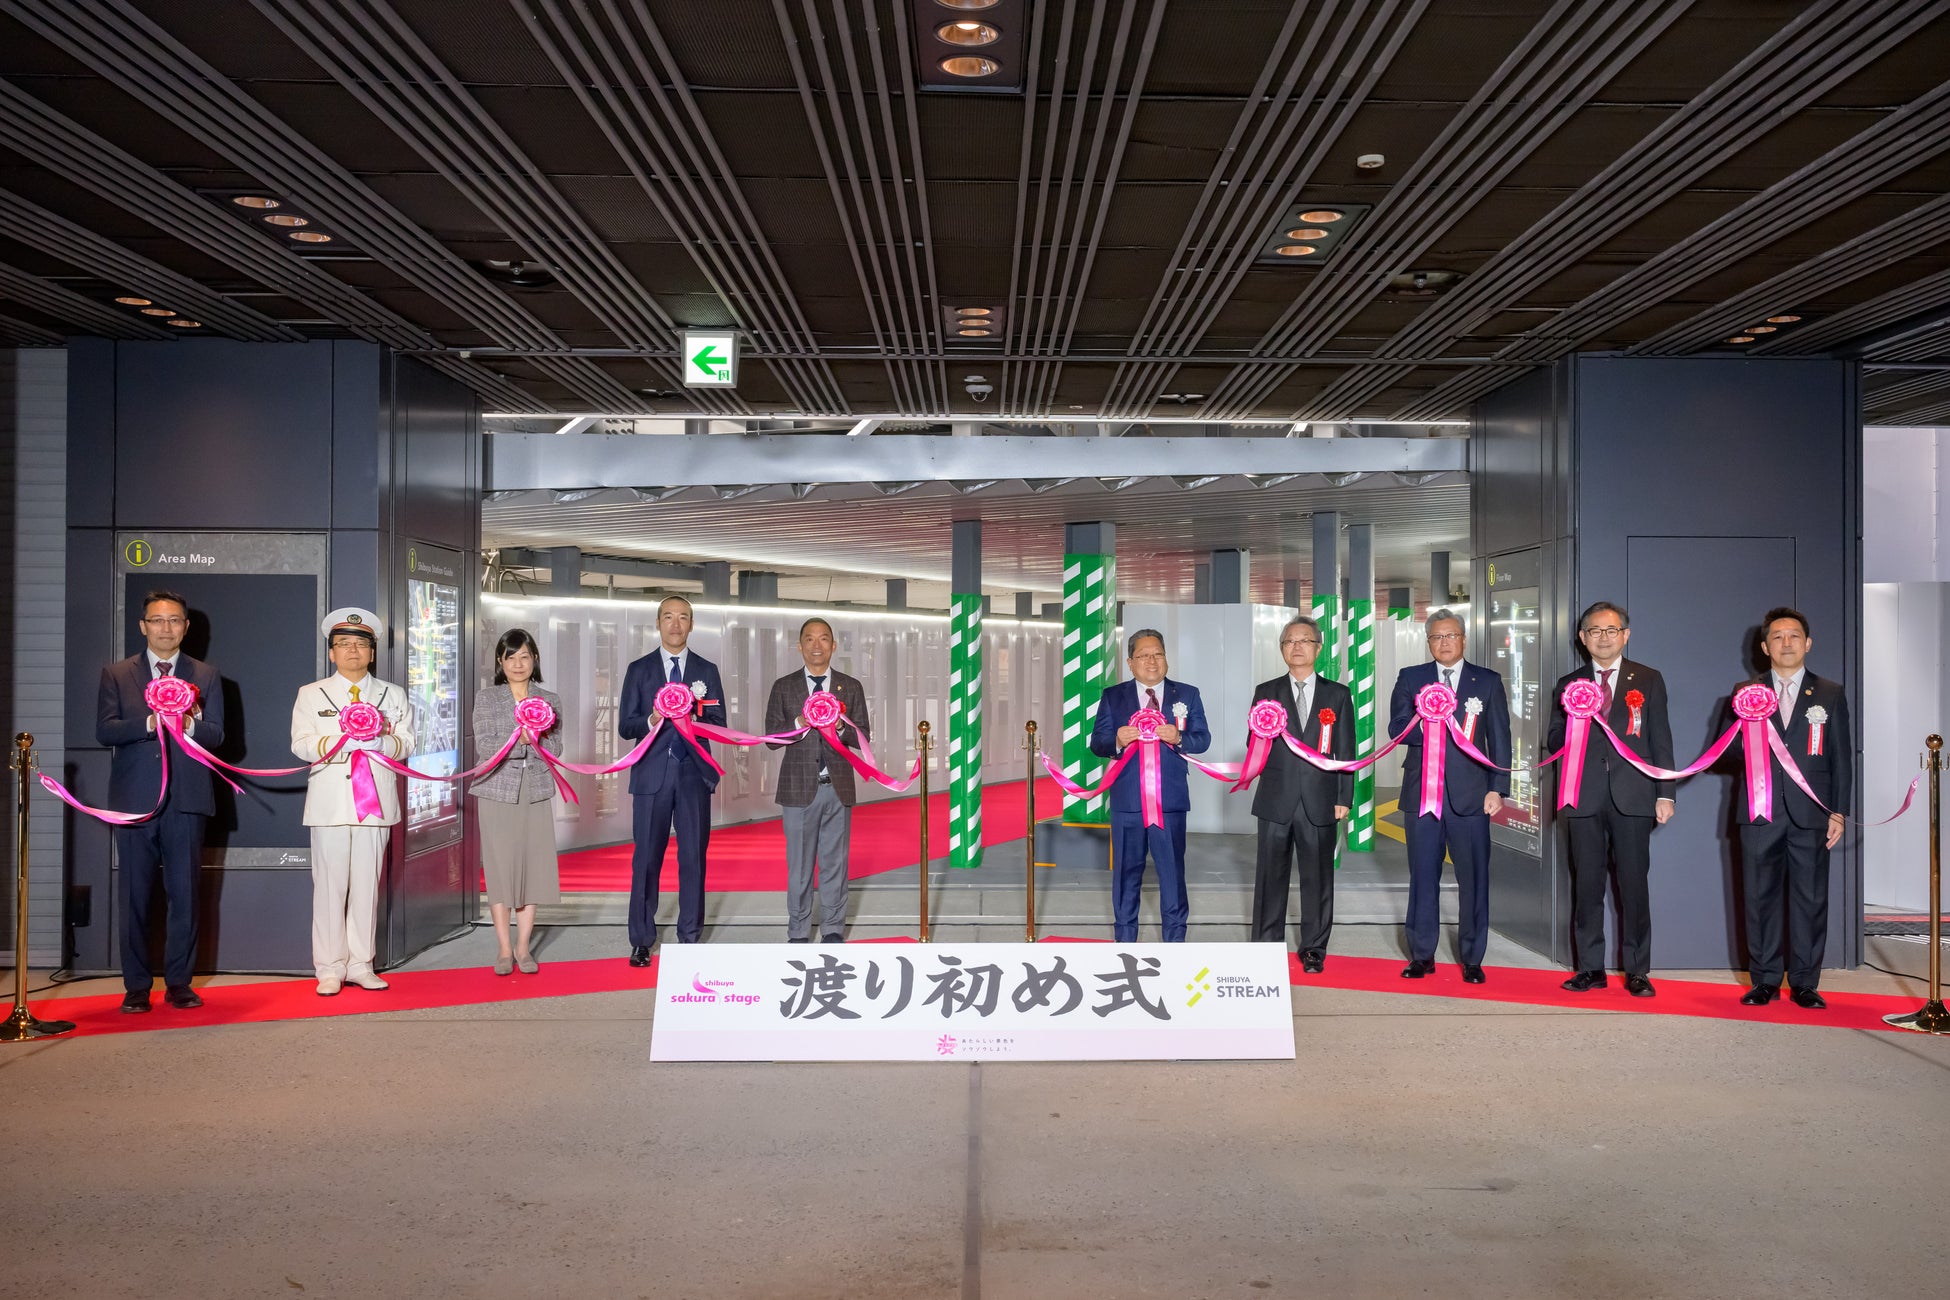 新たに繋がった渋谷のまちを幻想的に彩る「SHIBUYA WINTER ILLUMINATION 2023-2024 COLLECTIONS」開催中！